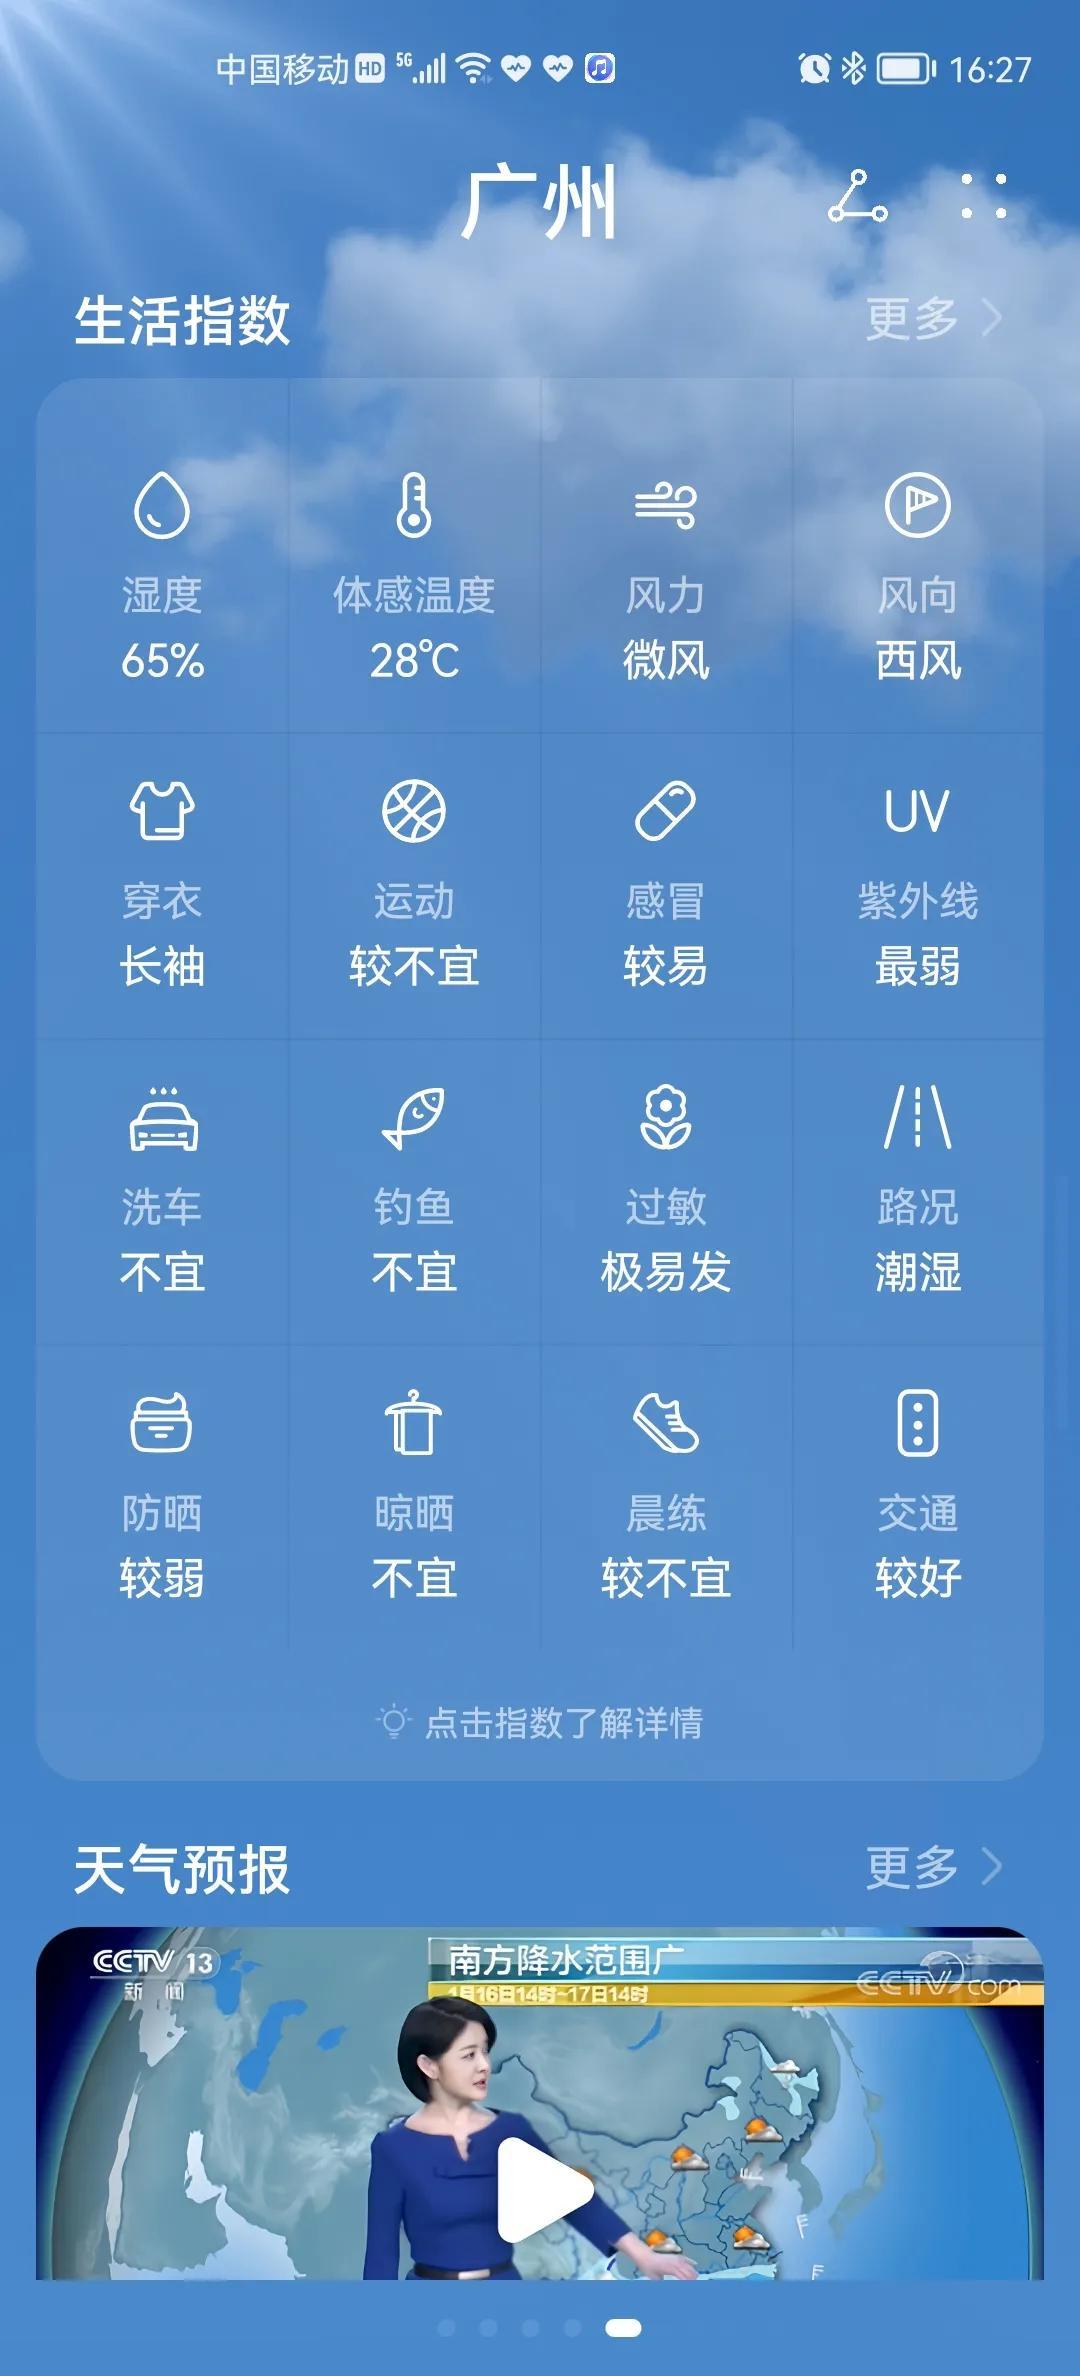 上海未来30天天气预报,上海15天天气预报 - 伤感说说吧